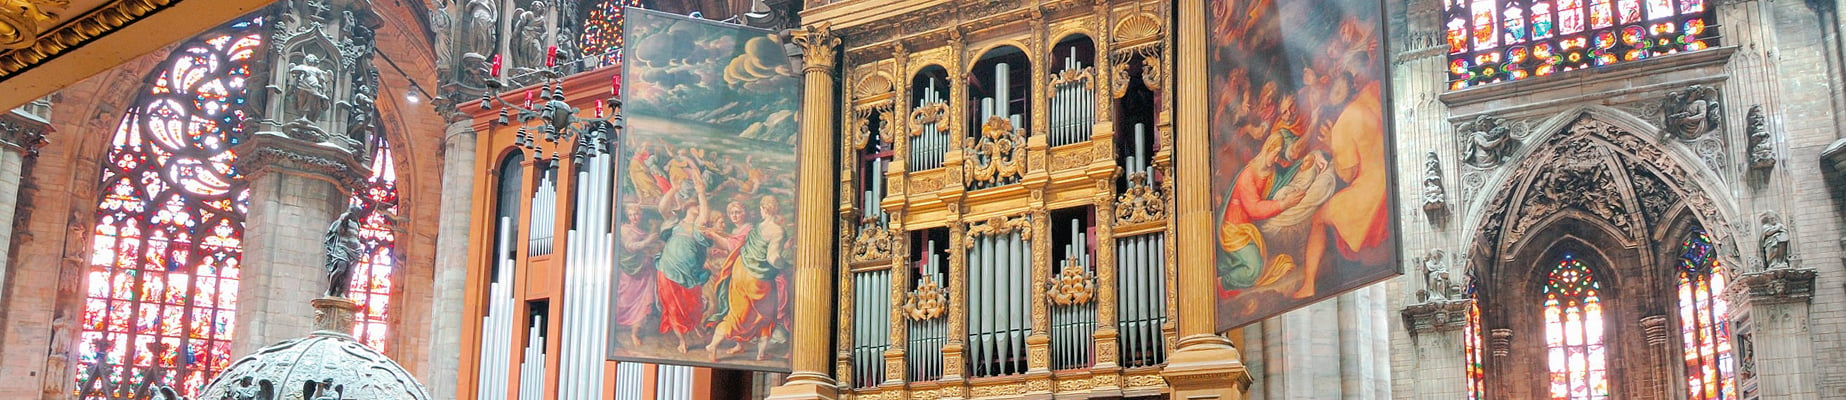 Milan Duomo’s Organ